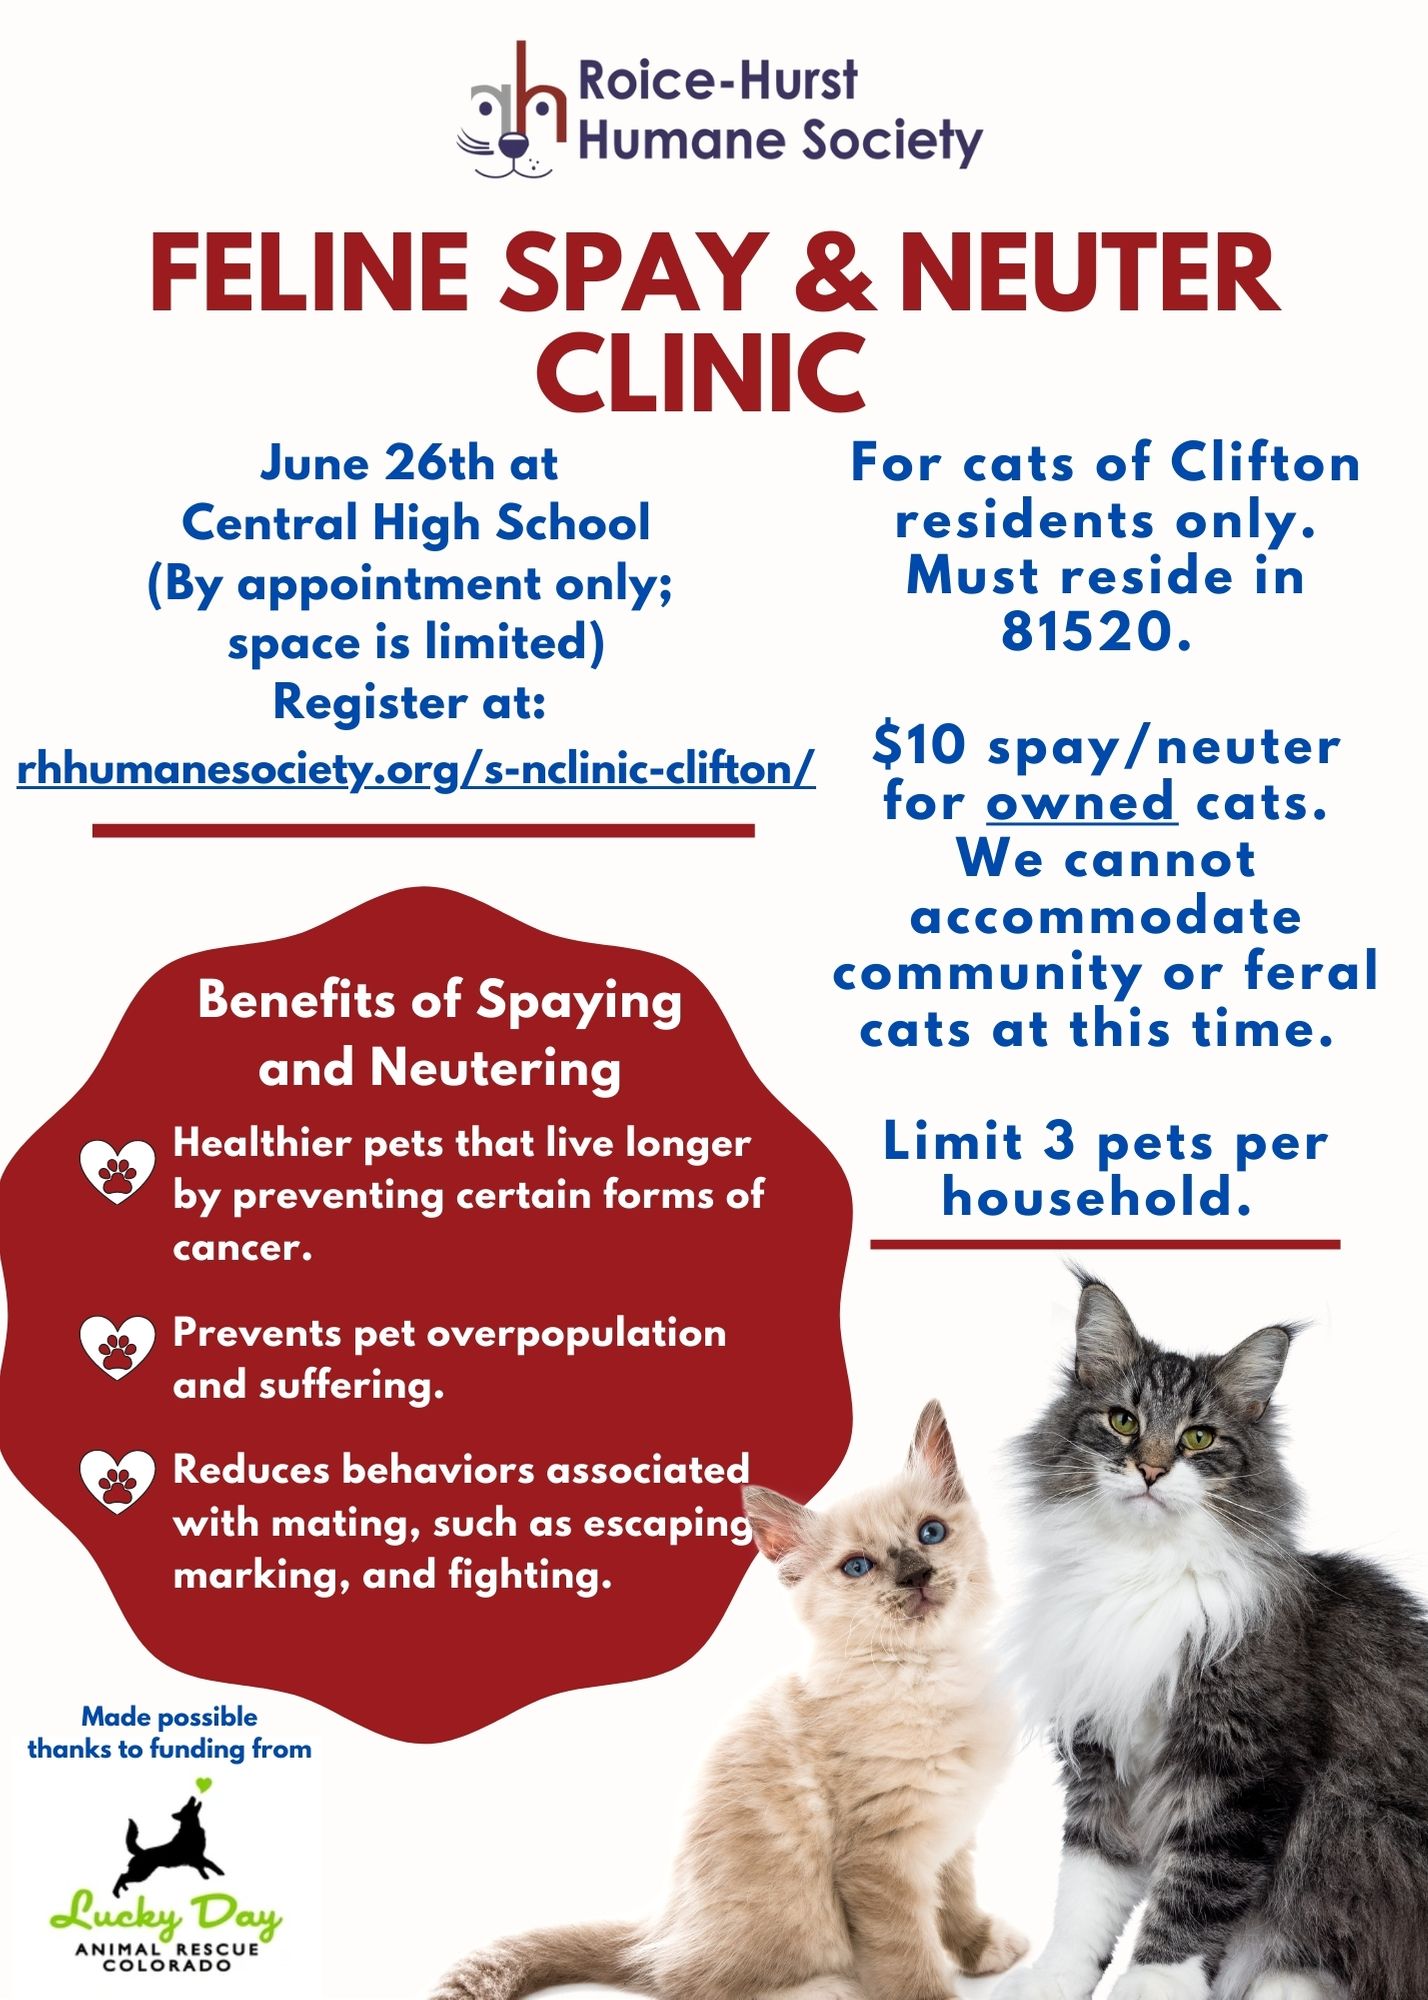 Feline Spay and Neuter Clinic